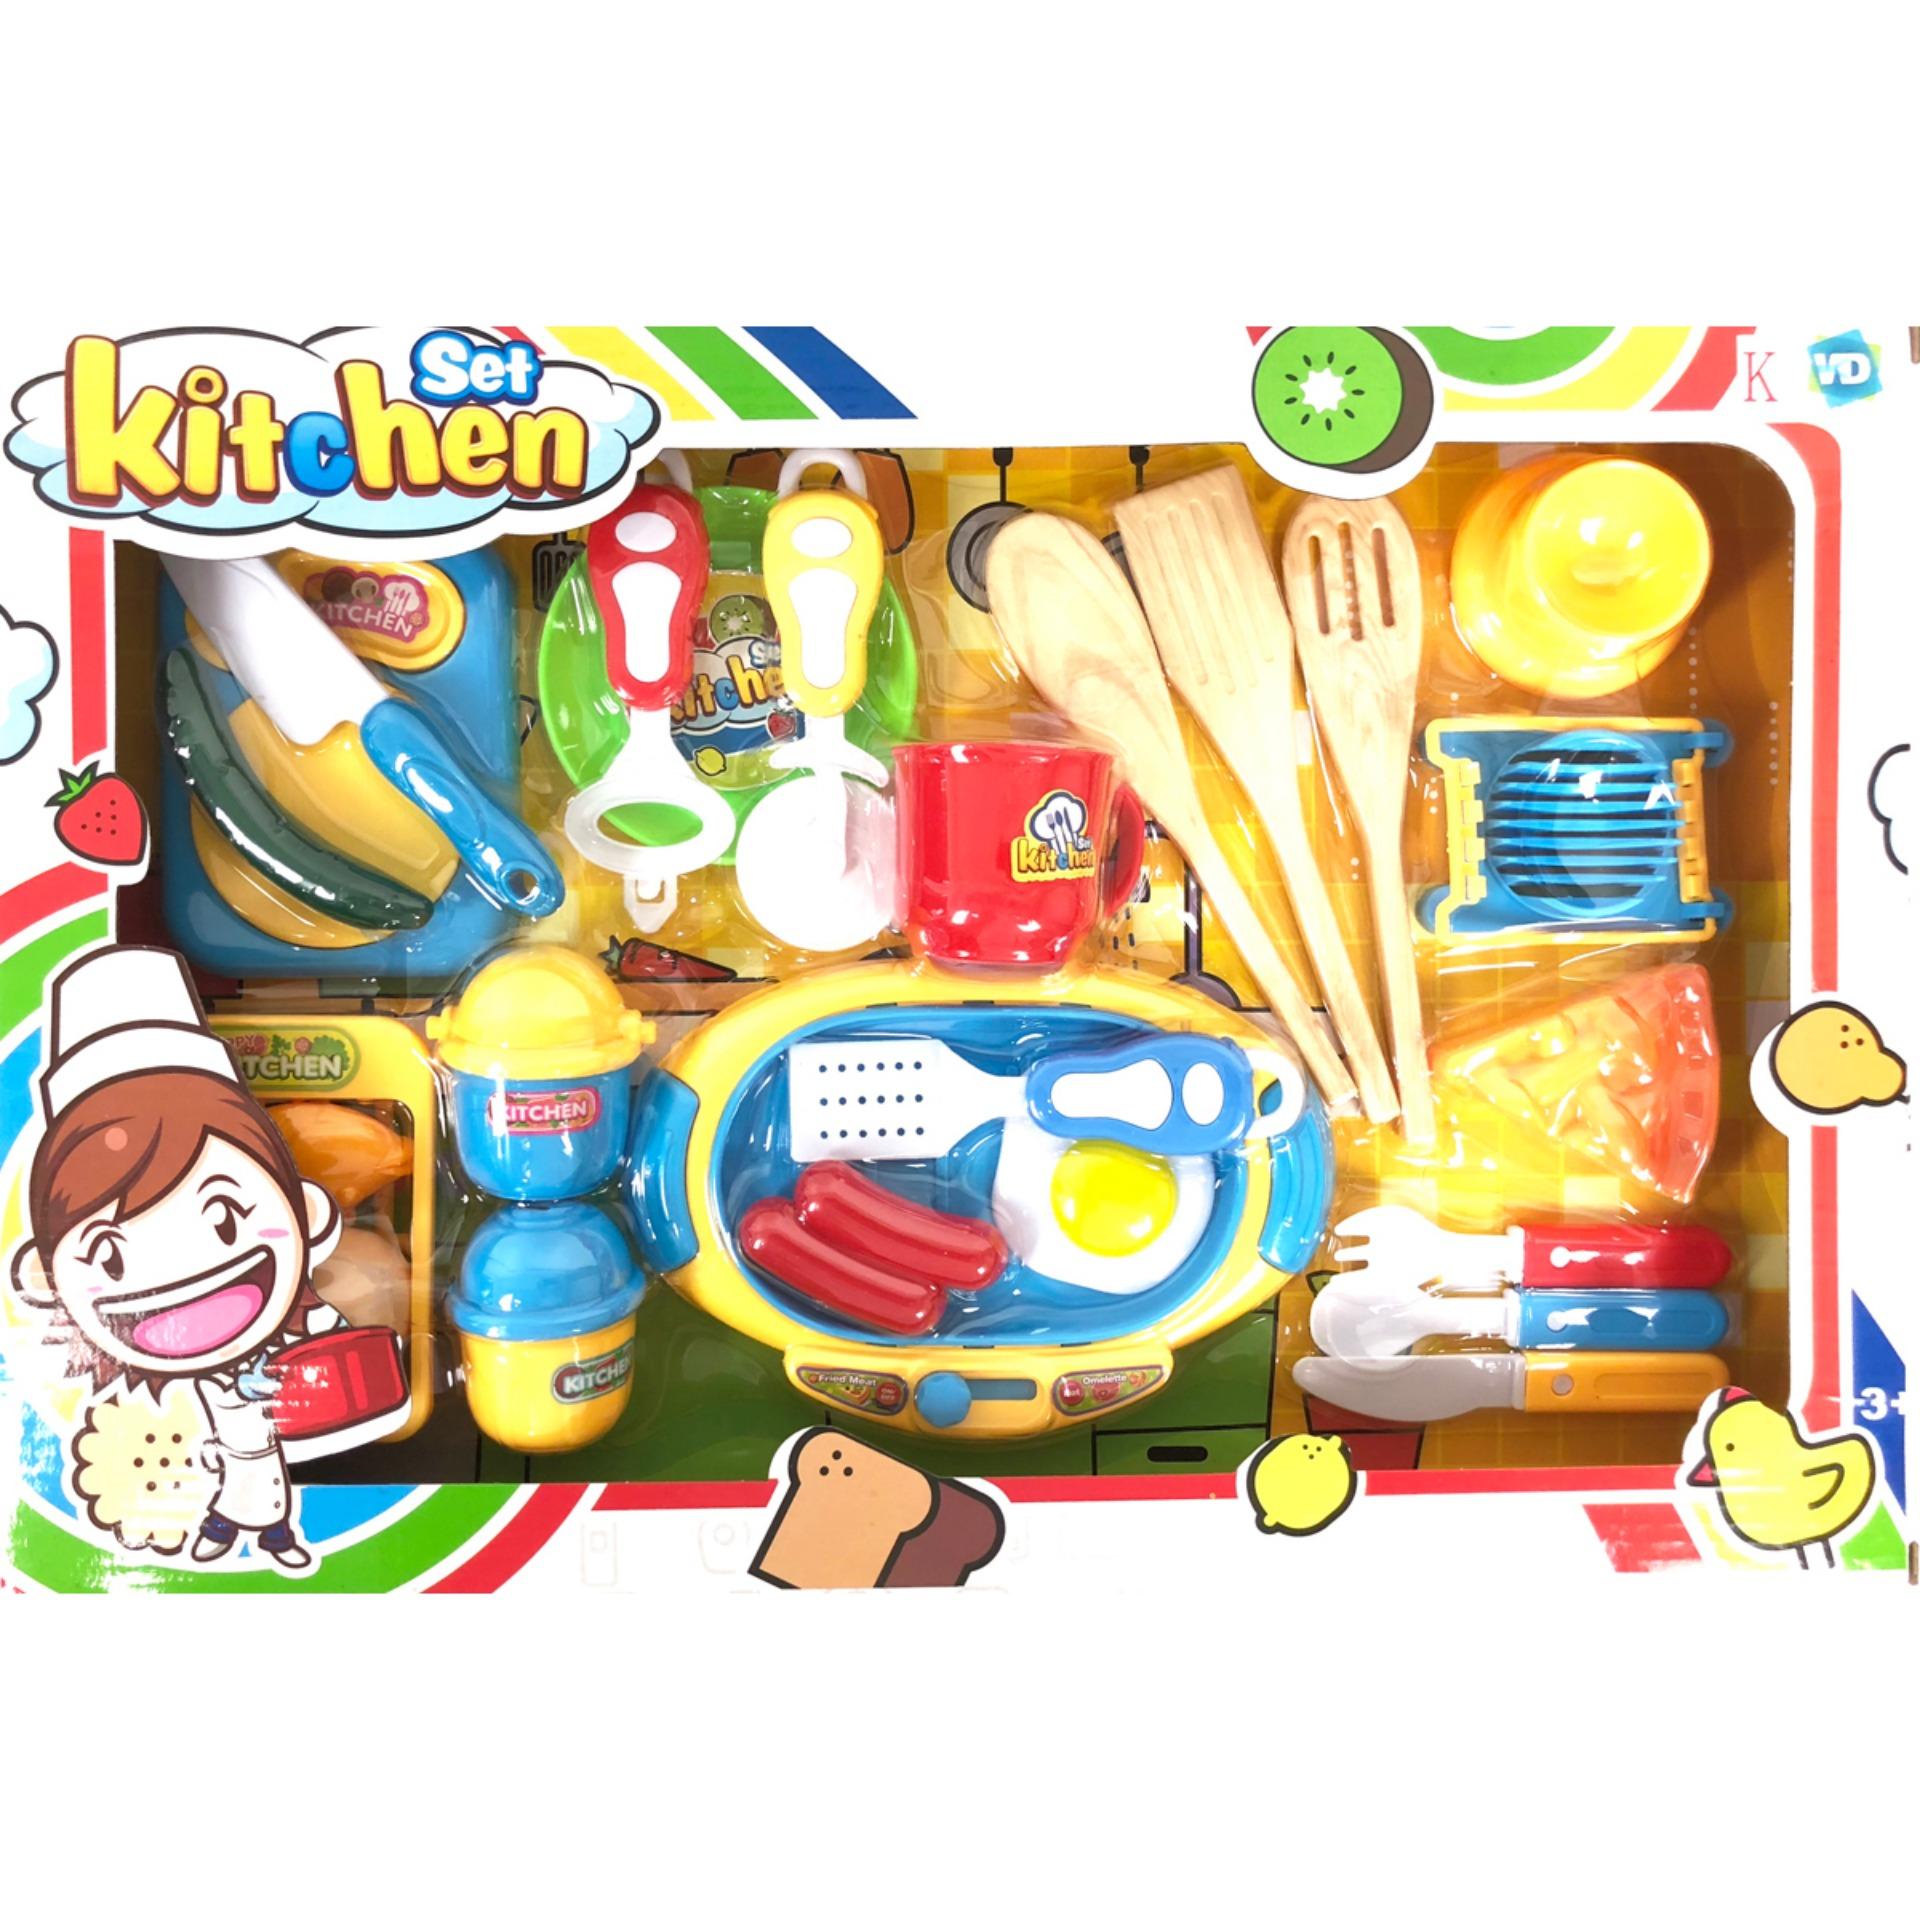 thetoy  ของเล่น ชุดครัว kitchen set สำหรับเด็ก ชุดเครื่องทำอาหาร ของเล่นเด็ก บทบาทสมมุติ